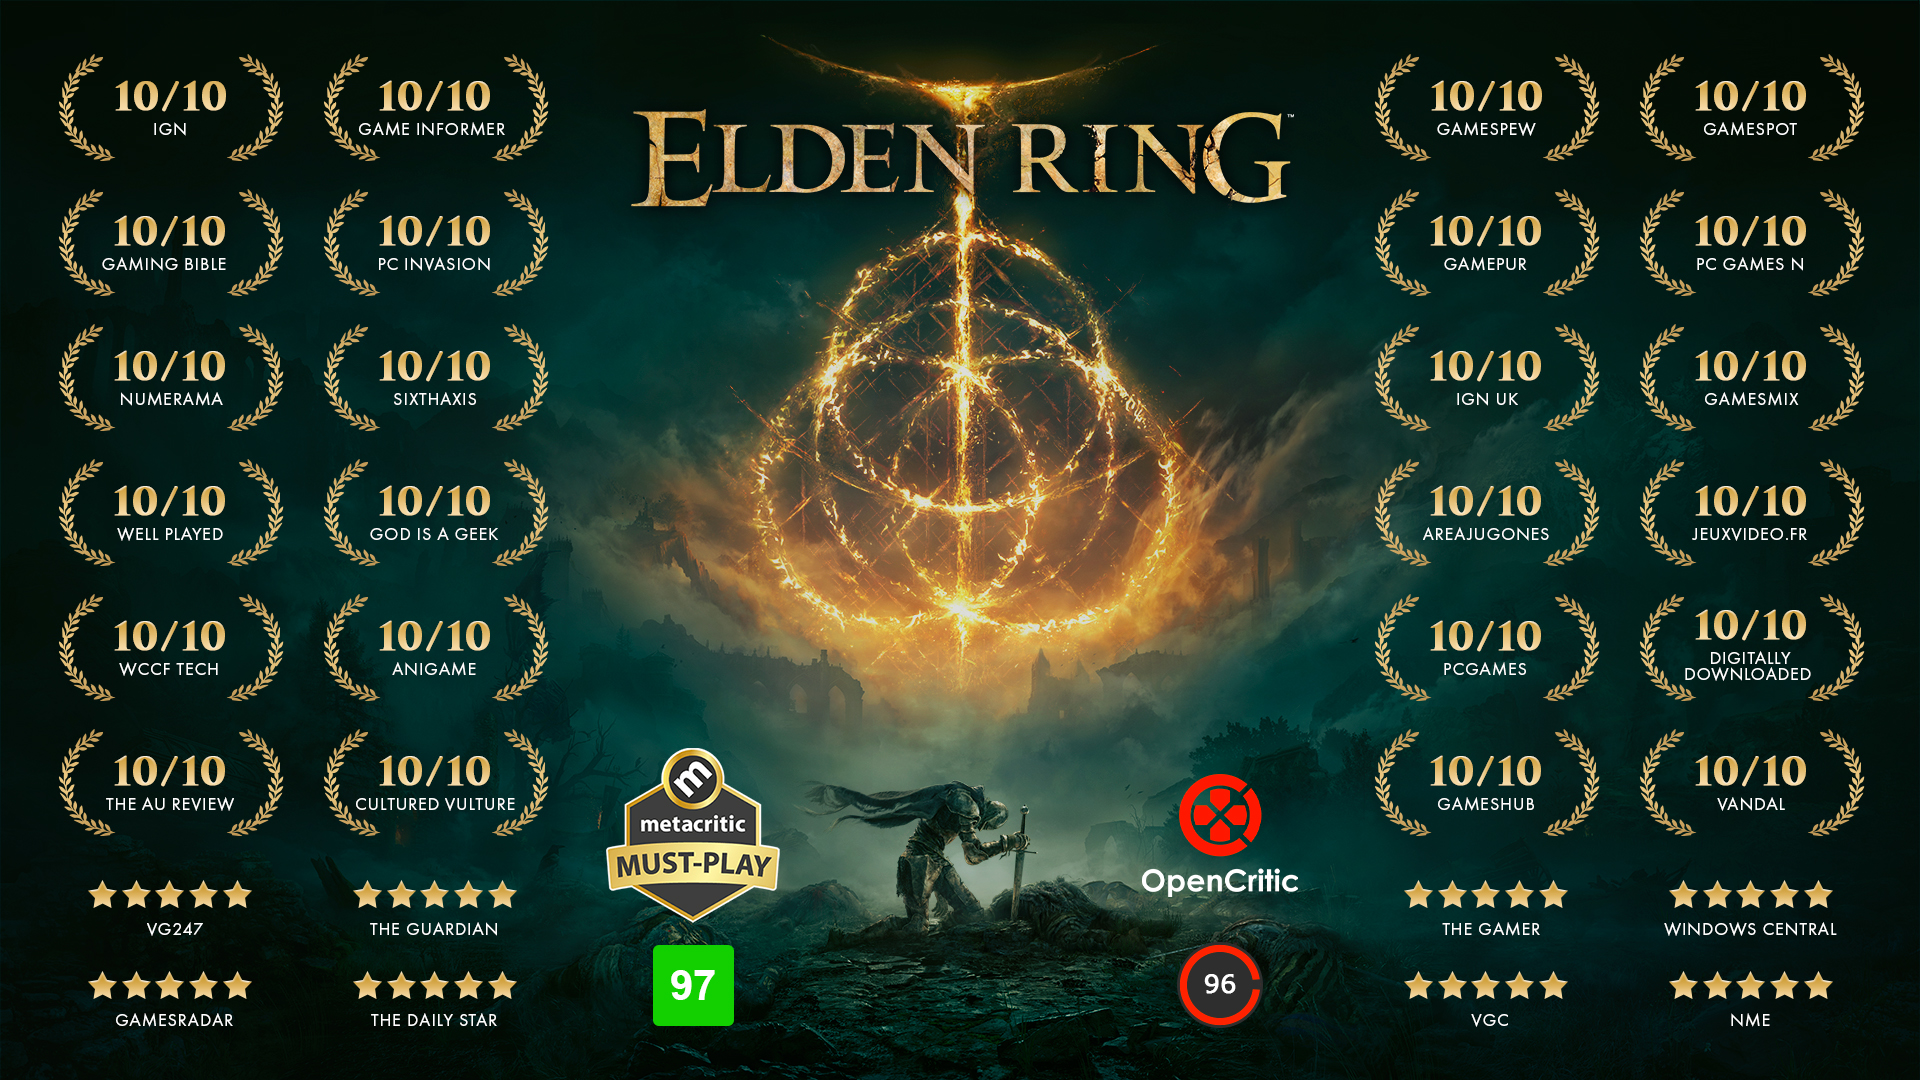 What is Elden Ring's review score on metacritic?